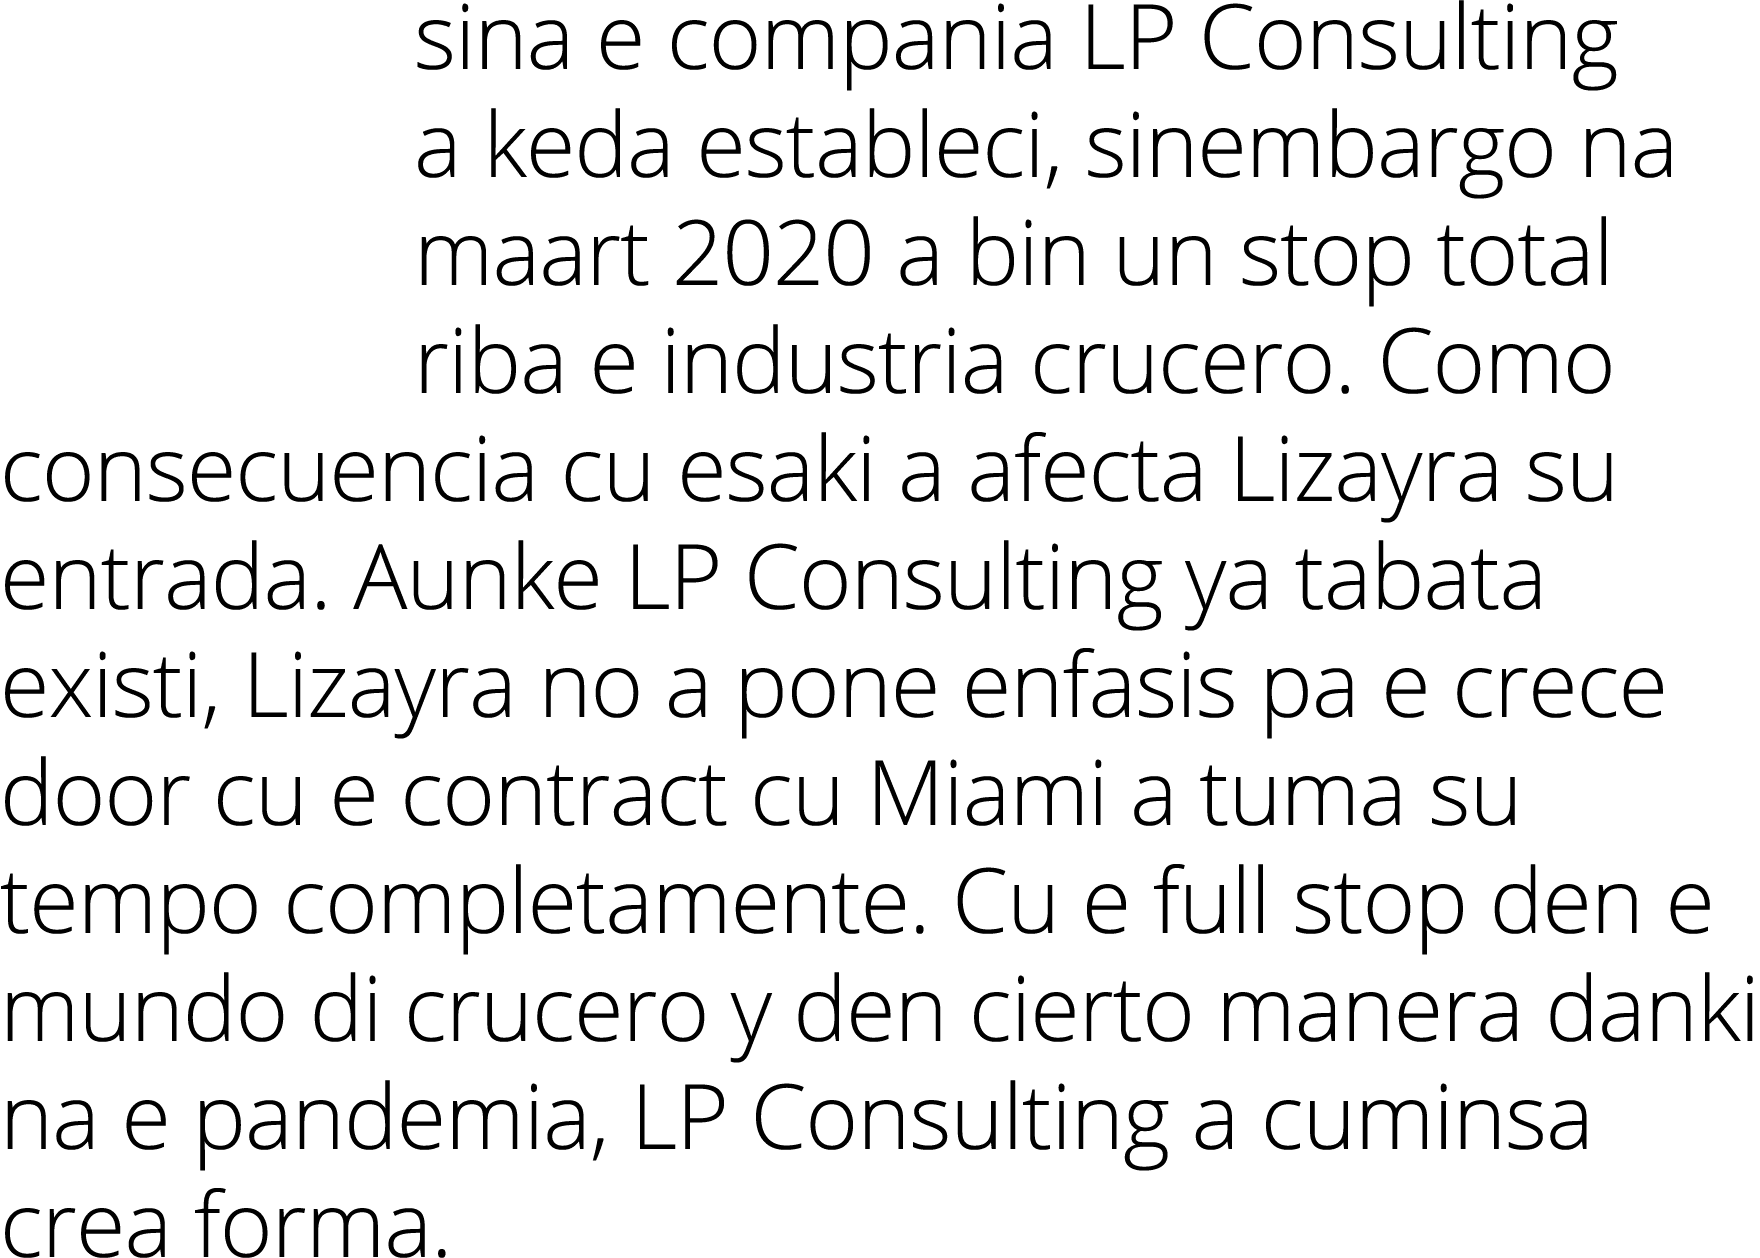 sina e compania LP Consulting a keda estableci, sinembargo na maart 2020 a bin un stop total riba e industria crucero   